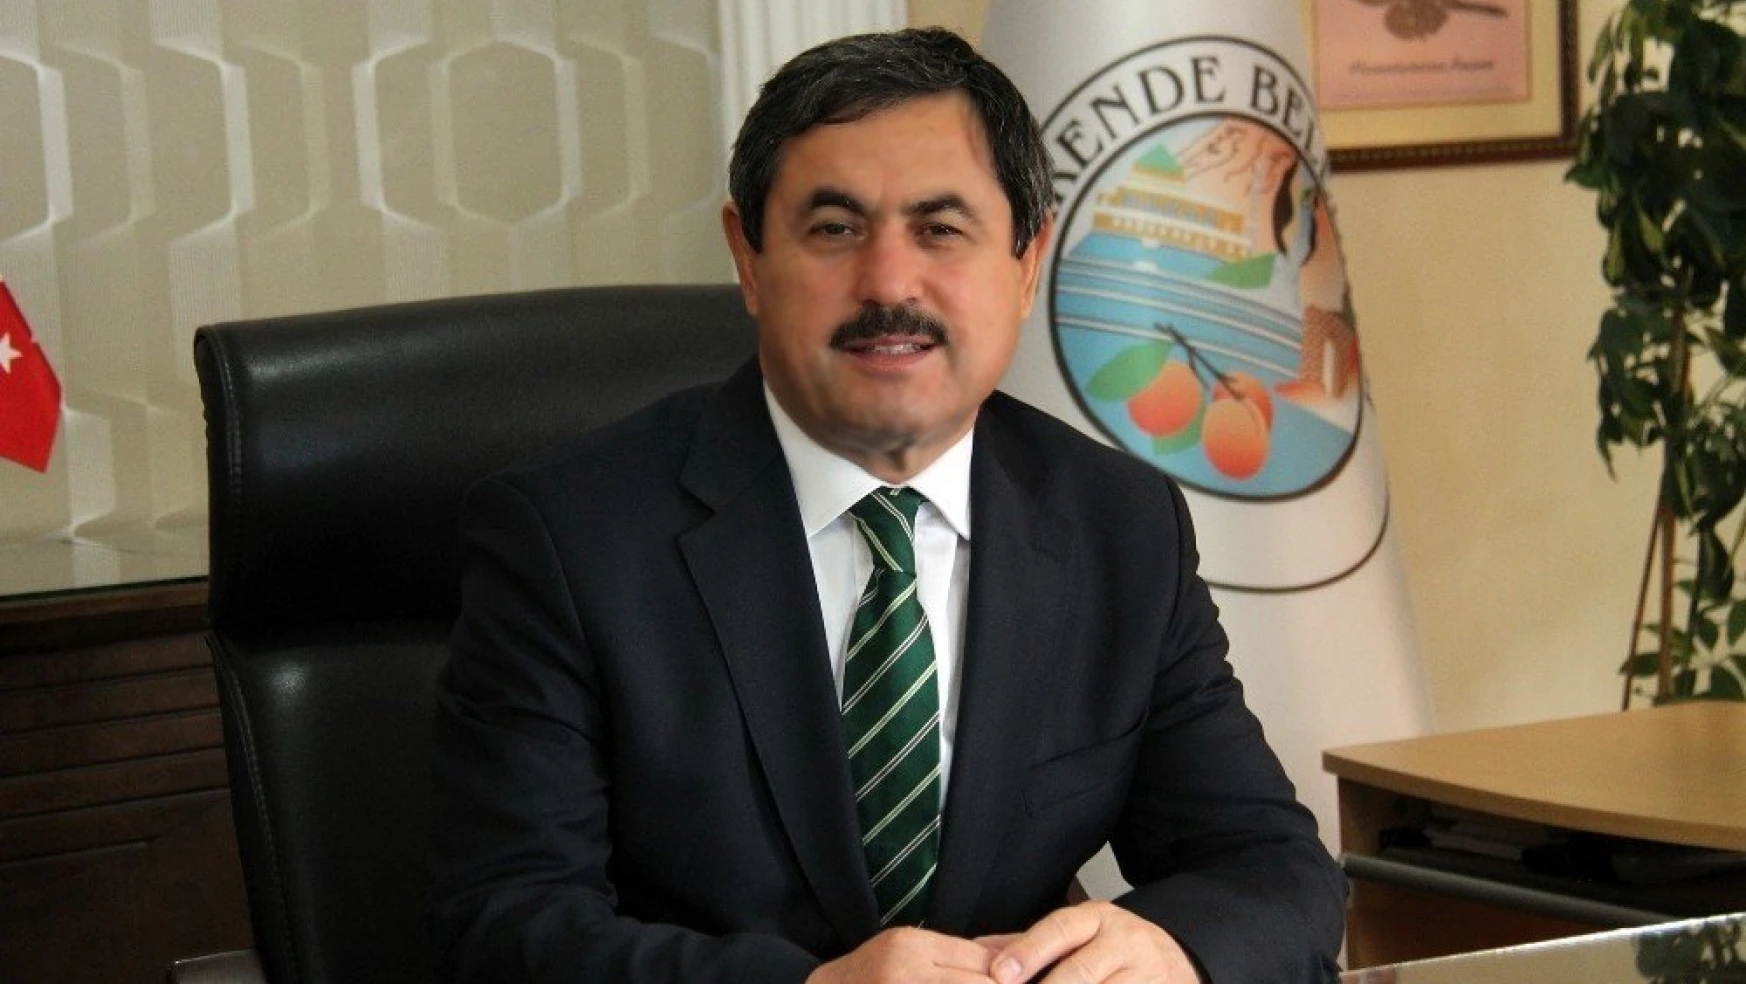 Darende Belediye Başkanı Dr. Süleyman Eser:
